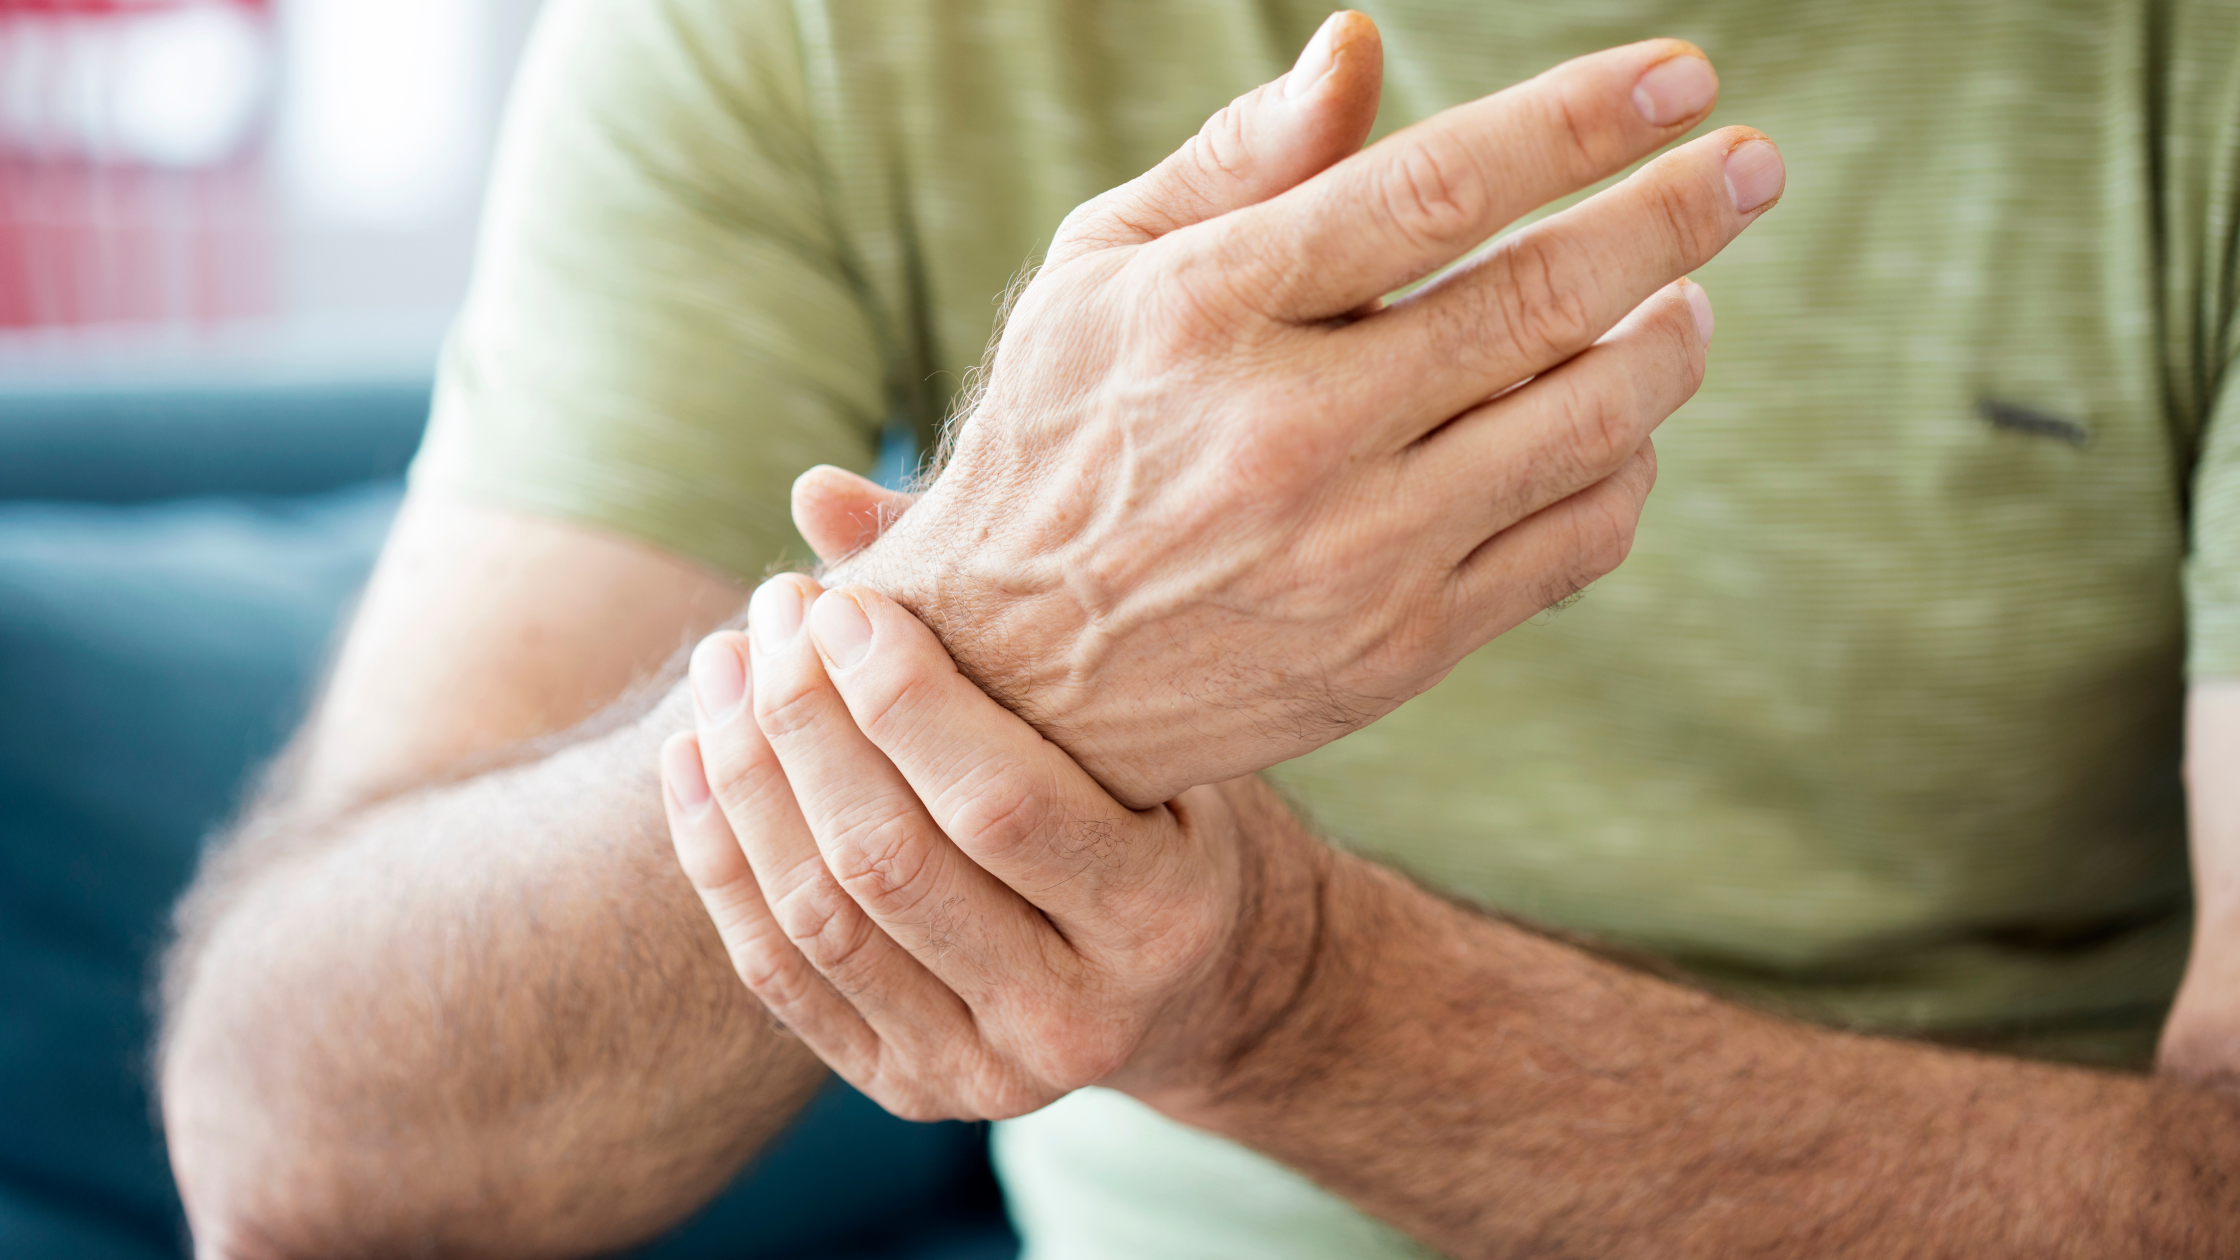 Coping with Psoriatic Arthritis